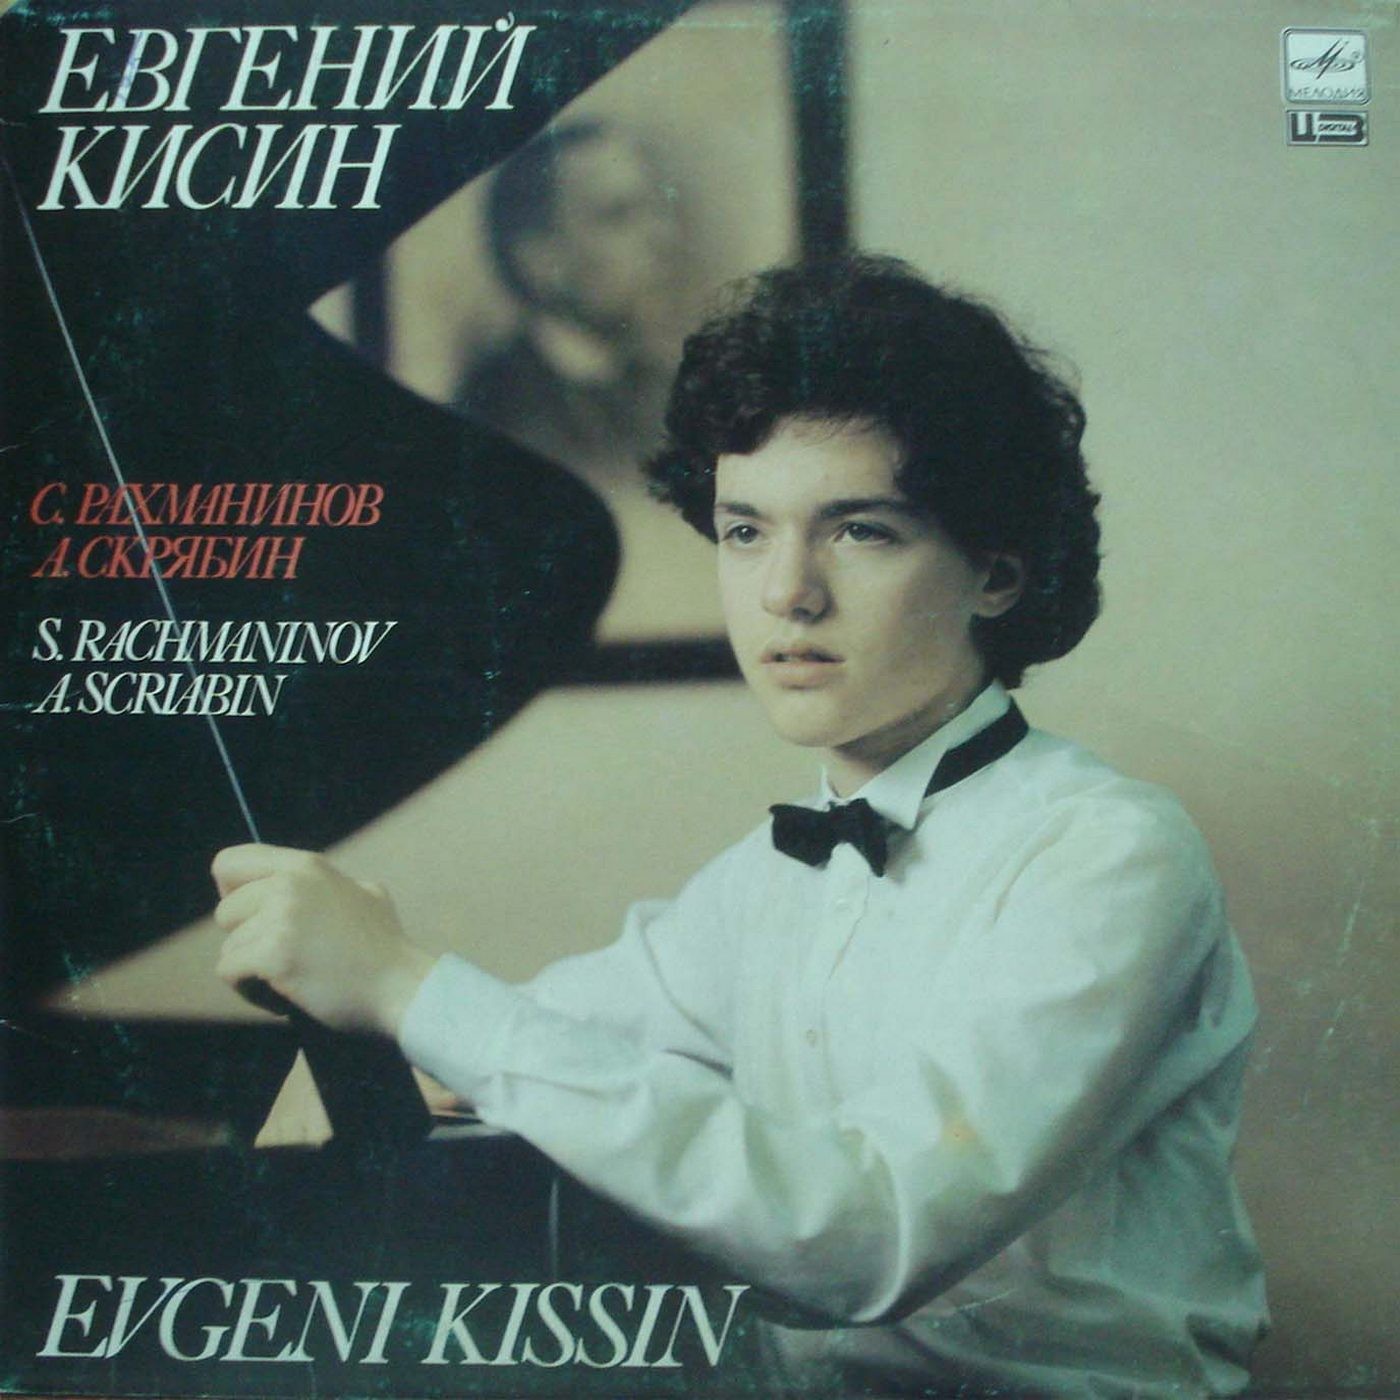 Евгений КИСИН (фортепиано): Произведения С. Рахманинова и А. Скрябина